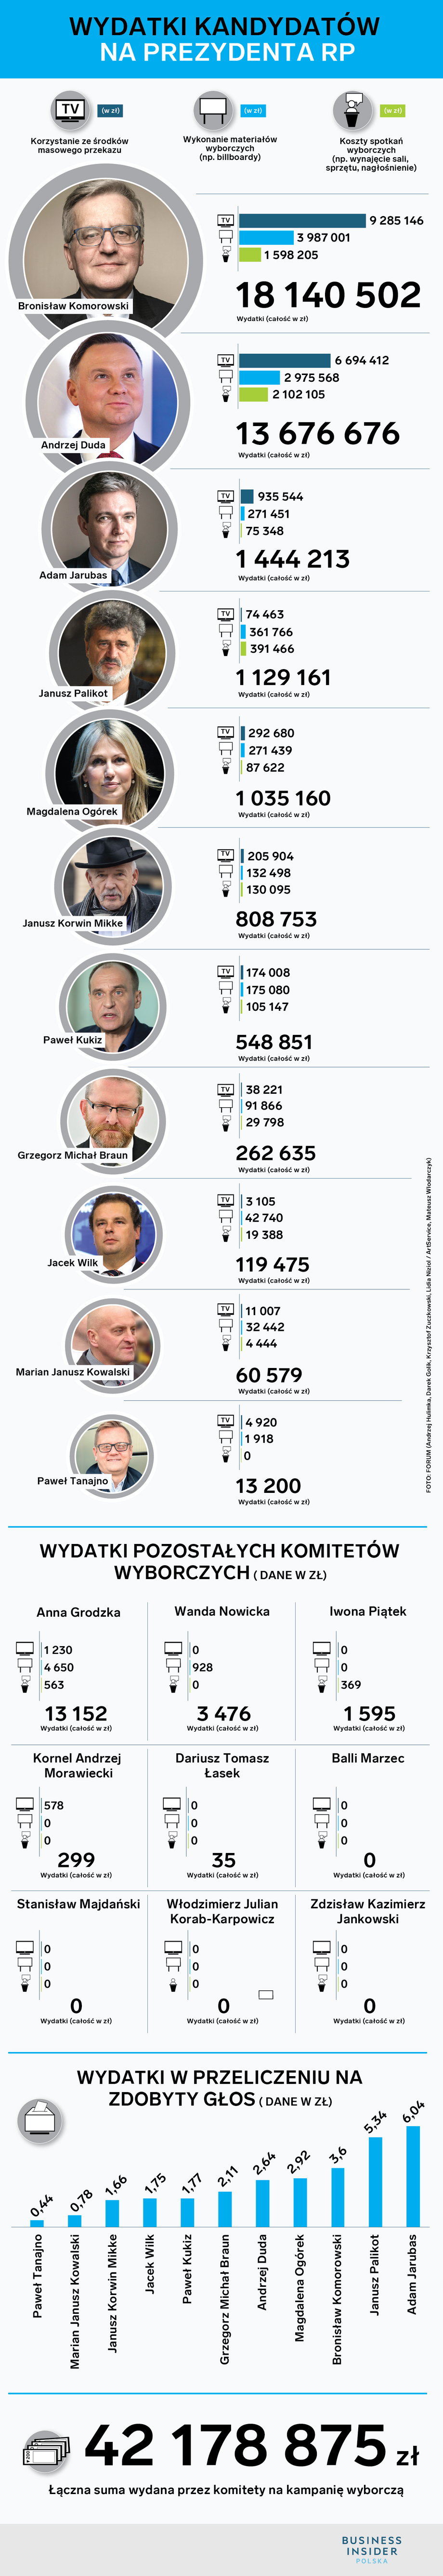 Wydatki komitetów wyborczych w kampanii prezydenckiej w 2015 roku